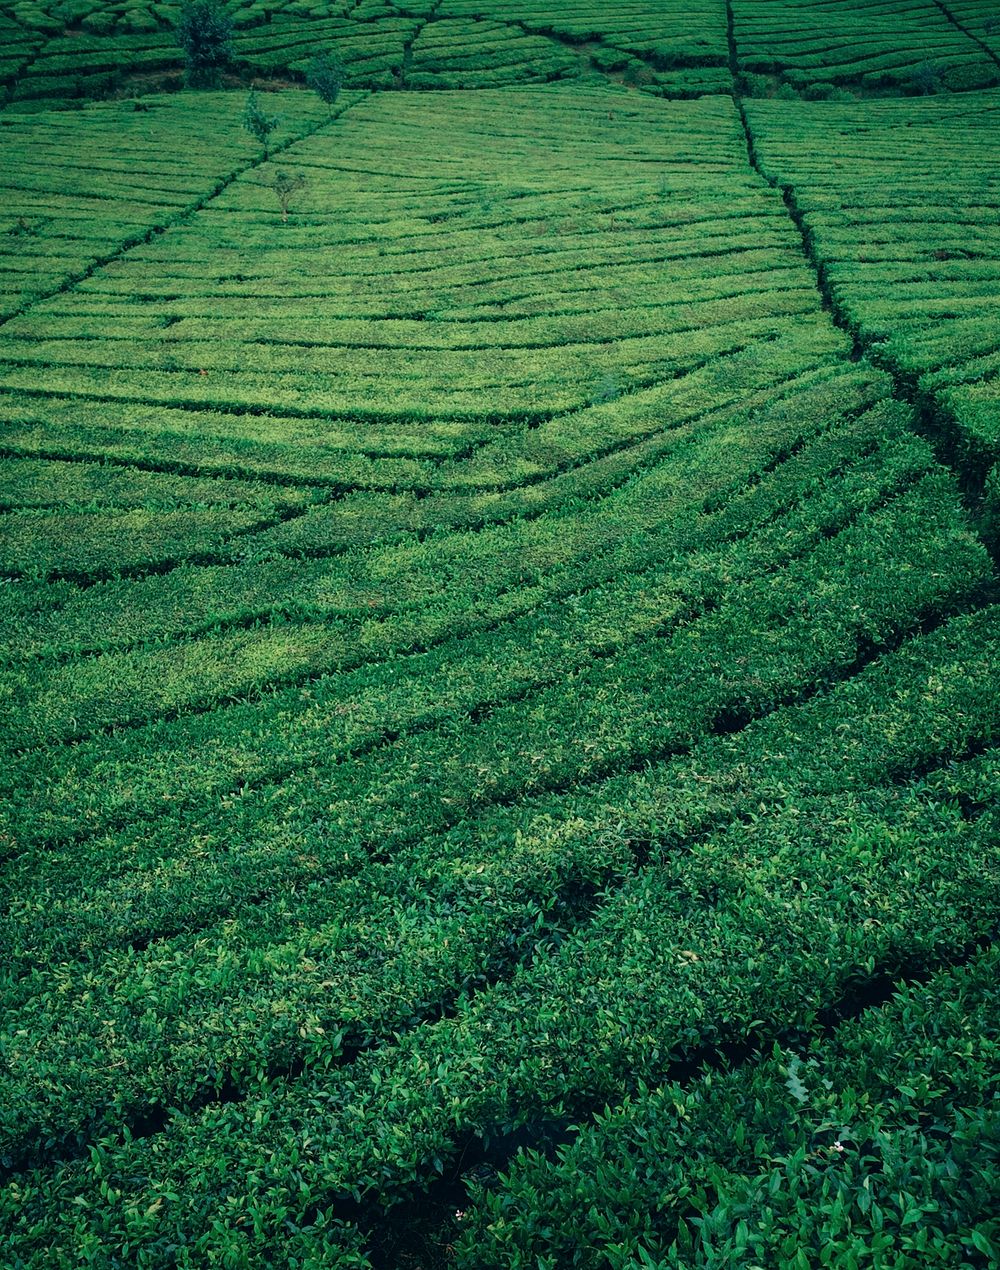 Tea fields on West Java, Indonesia